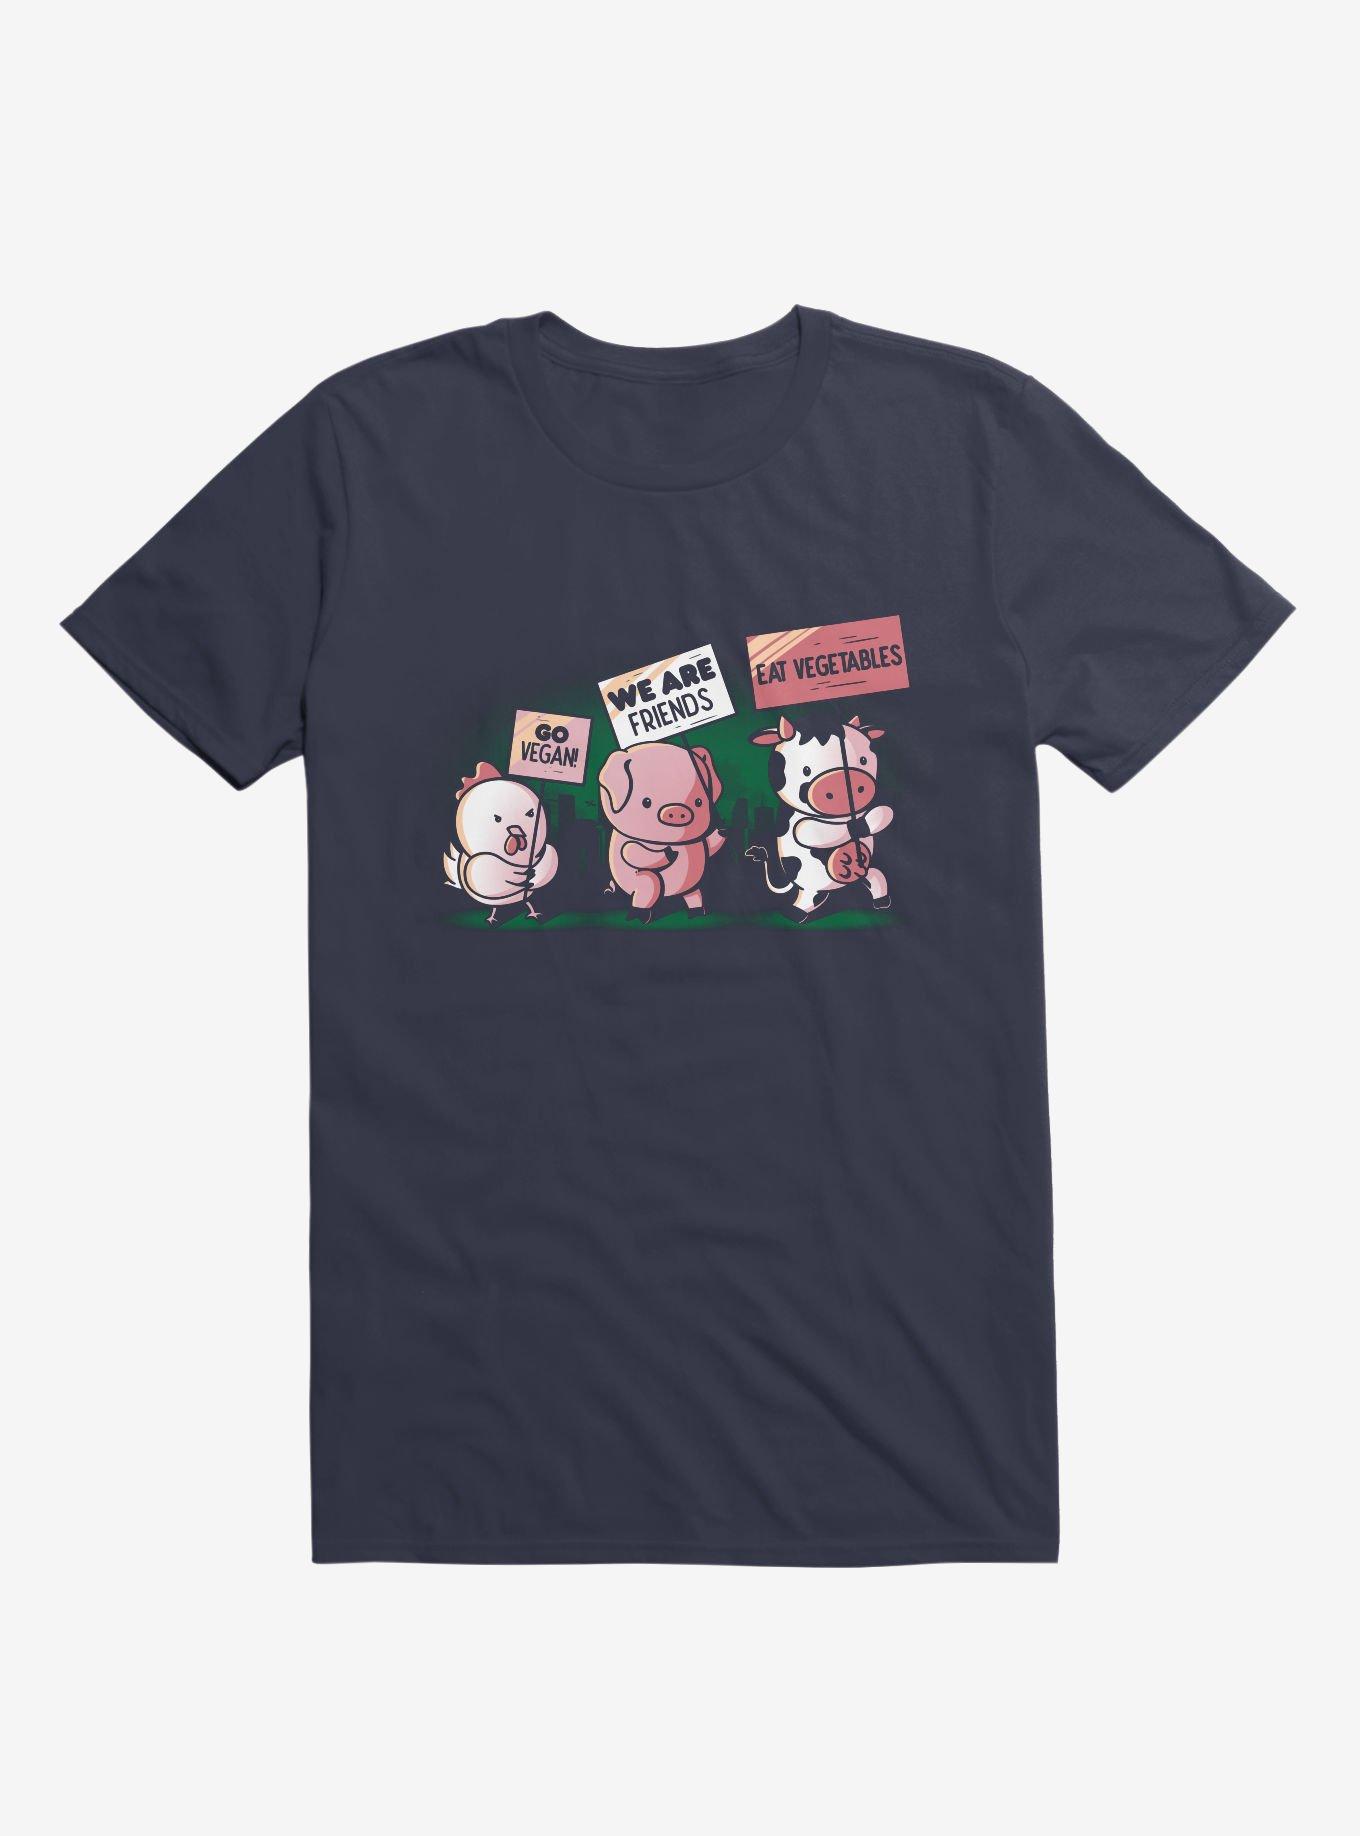 Go Vegan! T-Shirt, NAVY, hi-res